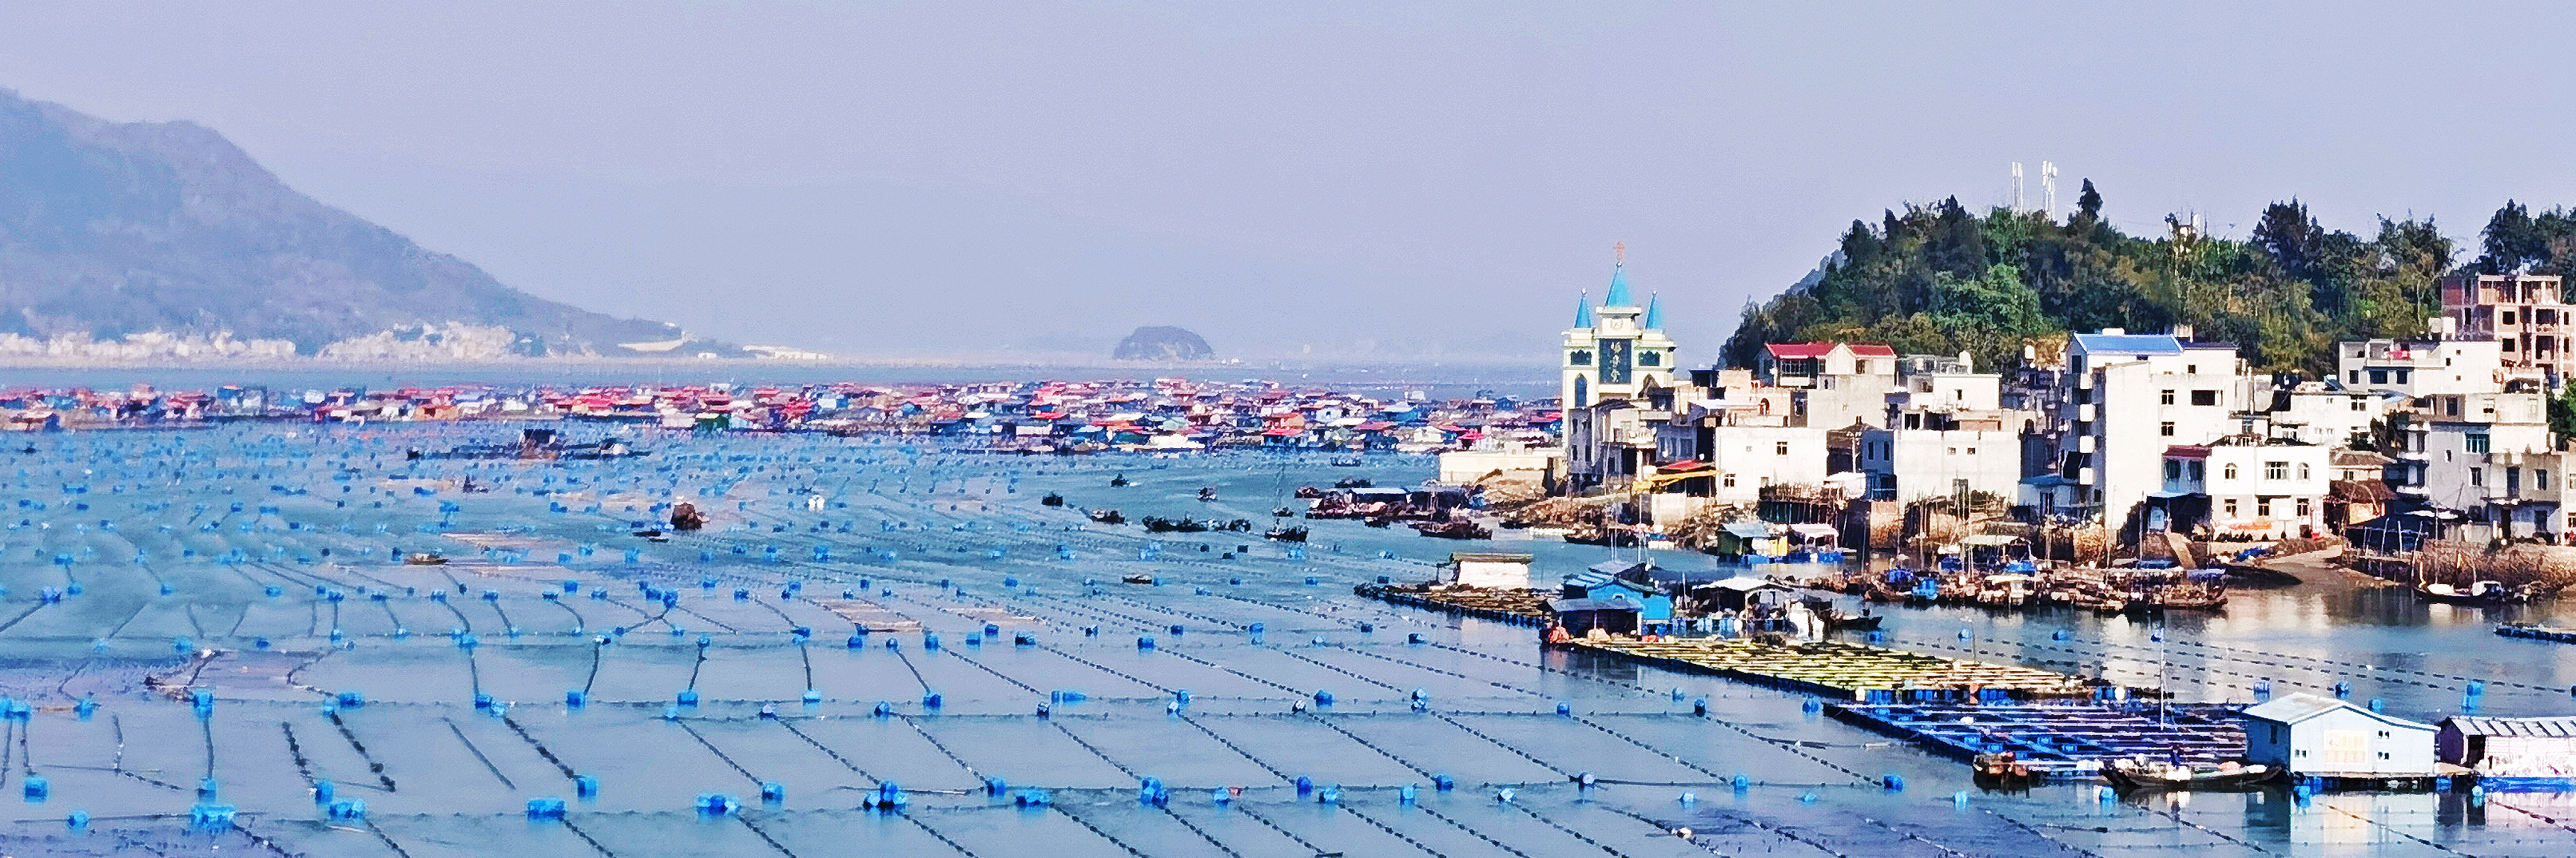 奔福行动 | 诡谲竿影遍布海面 阳光灿烂霞浦渔村